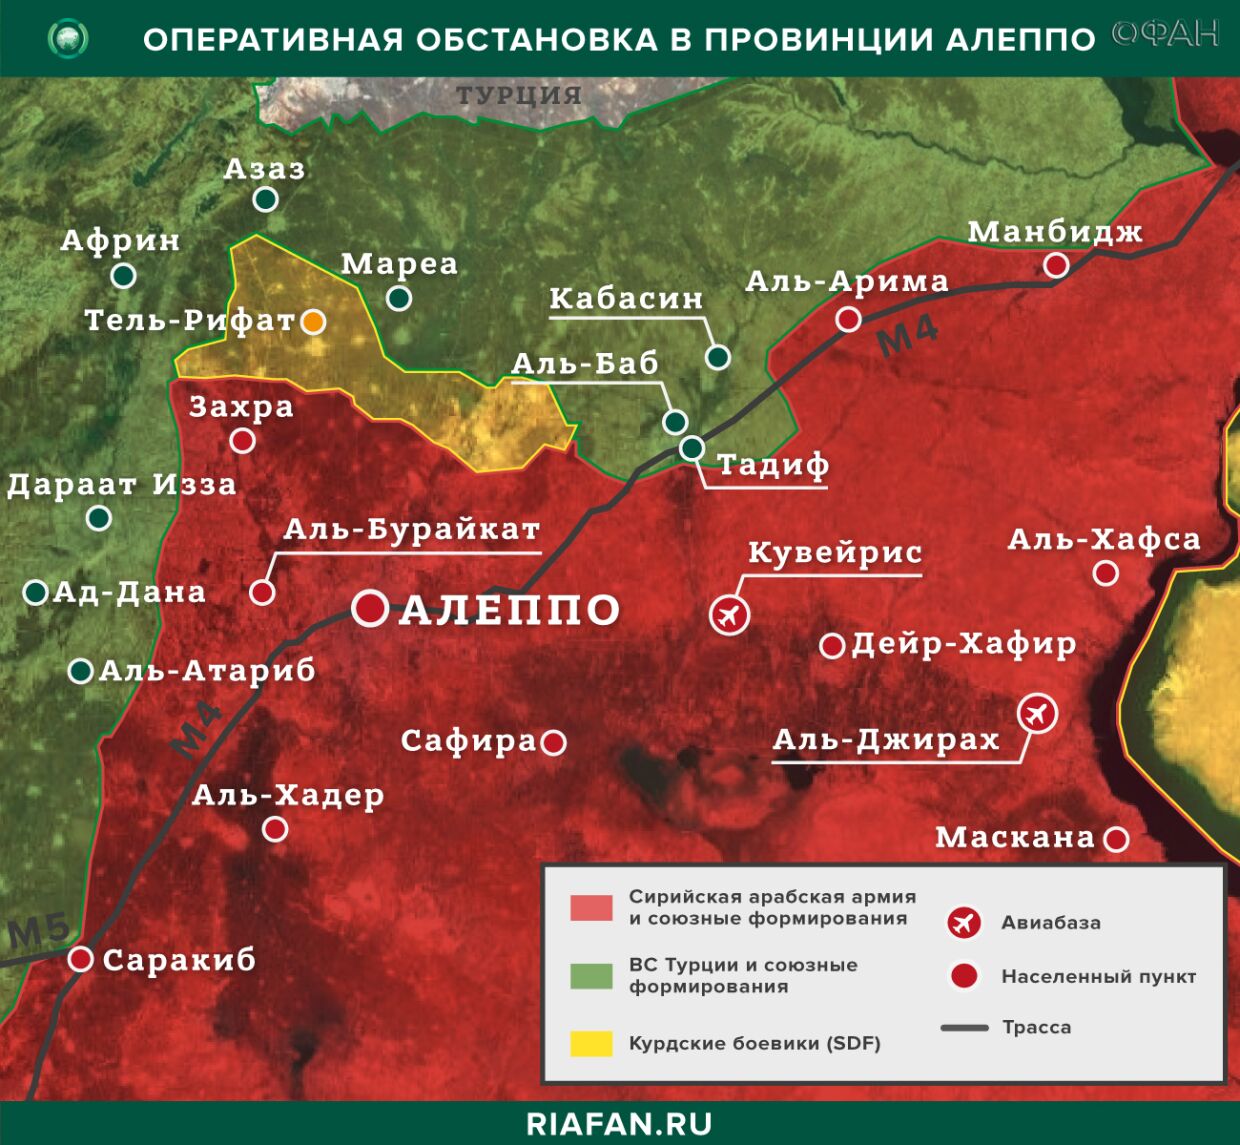 Сирия новости 9 сентября 22.30: ЦПВС РФ сообщил о проведении трех гуманитарных акций в САР